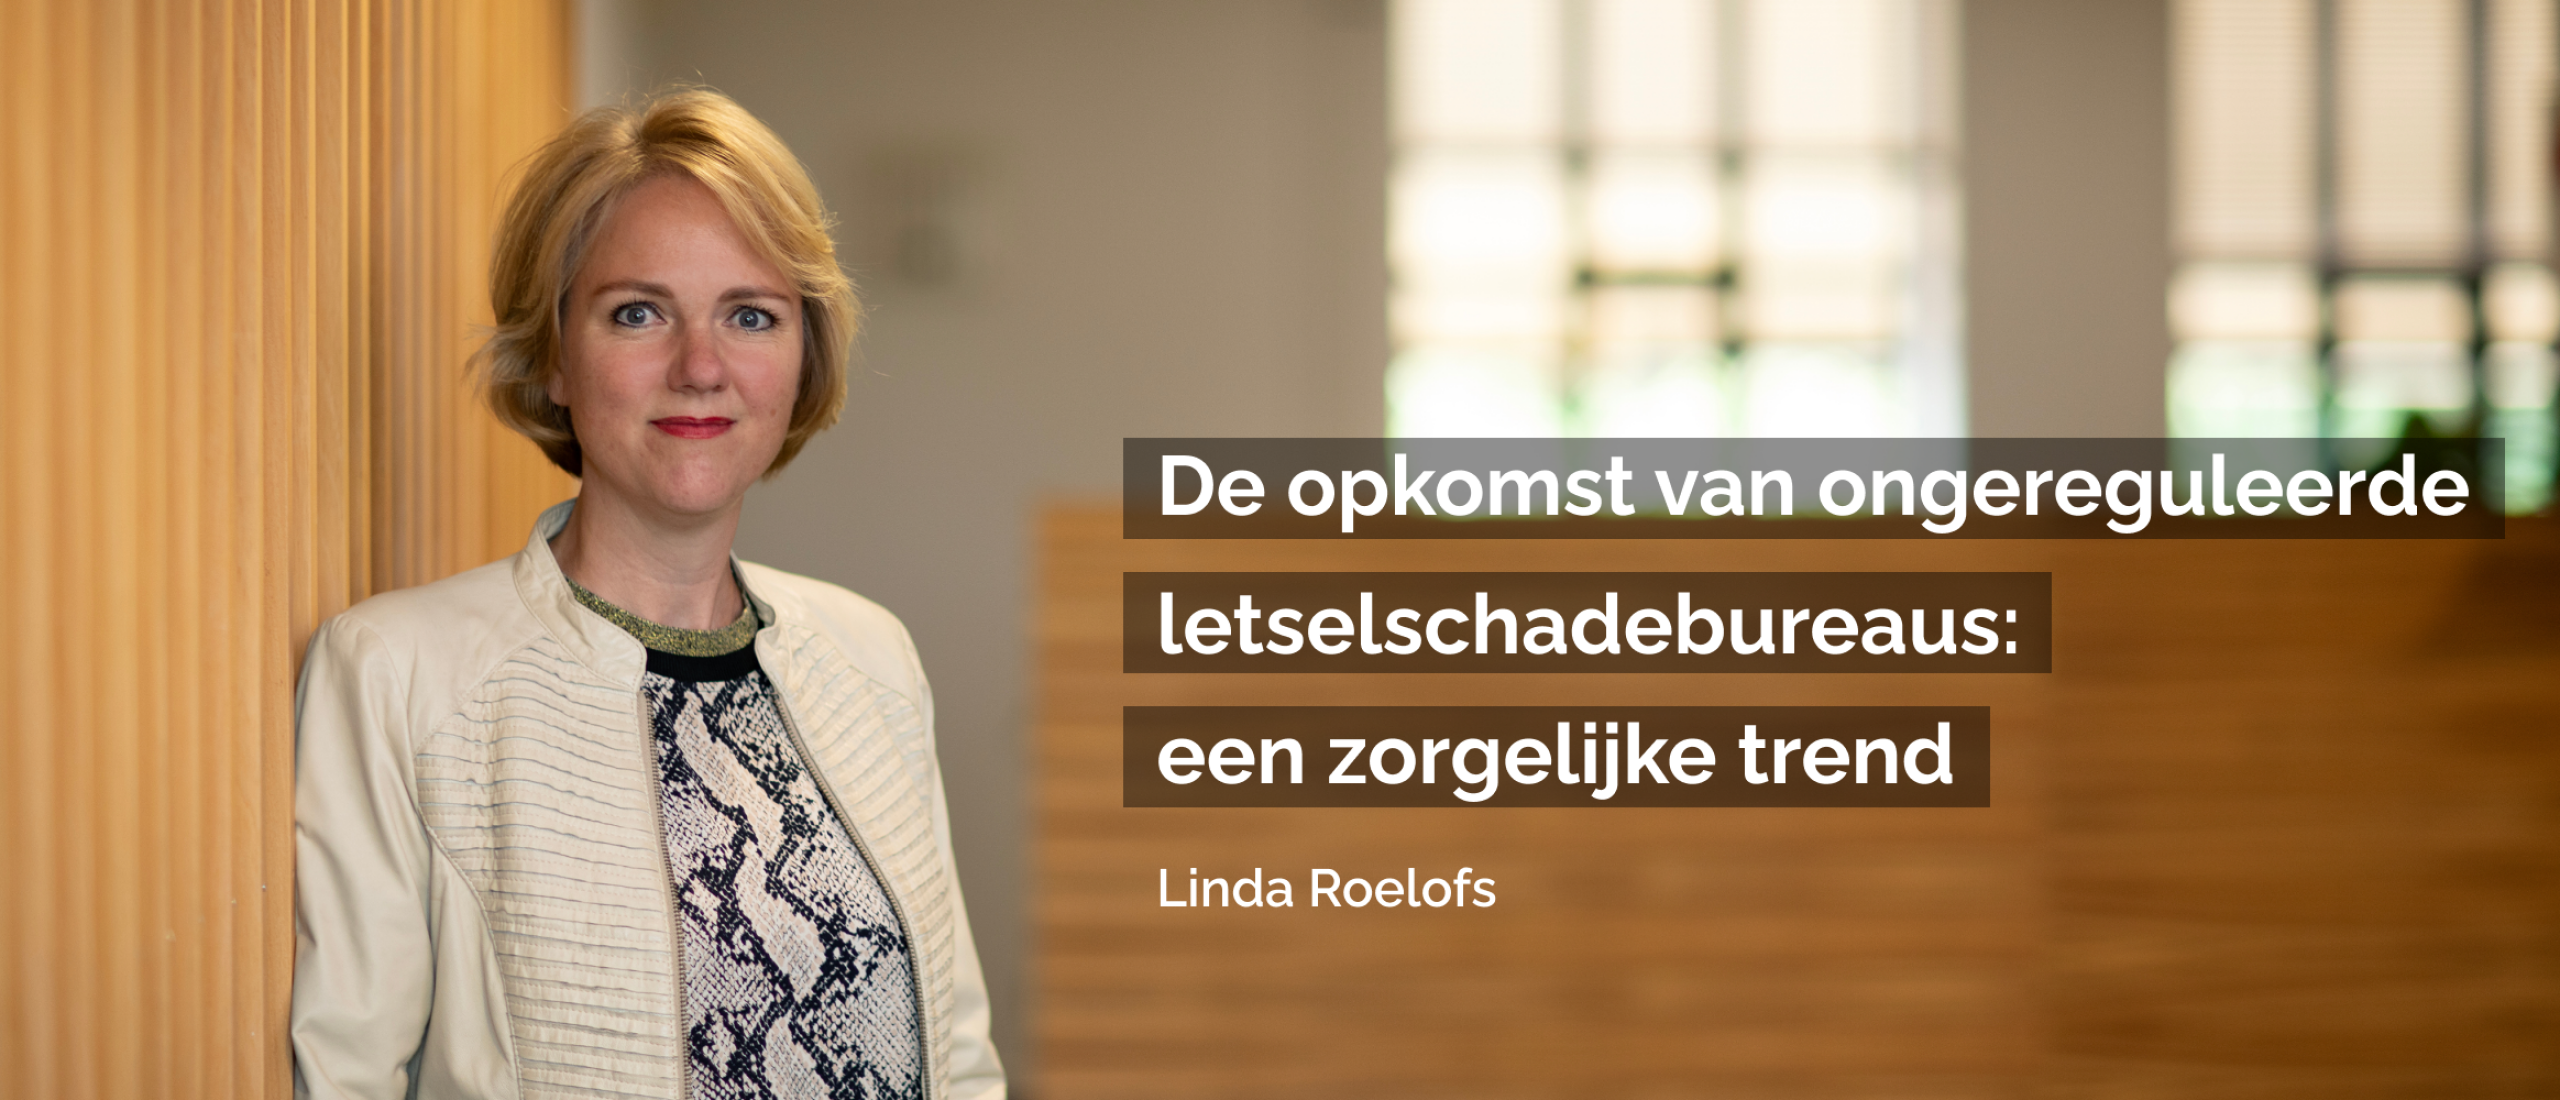 Blog Linda Roelofs | De opkomst van ongereguleerde letselschadebureaus: een zorgelijke trend